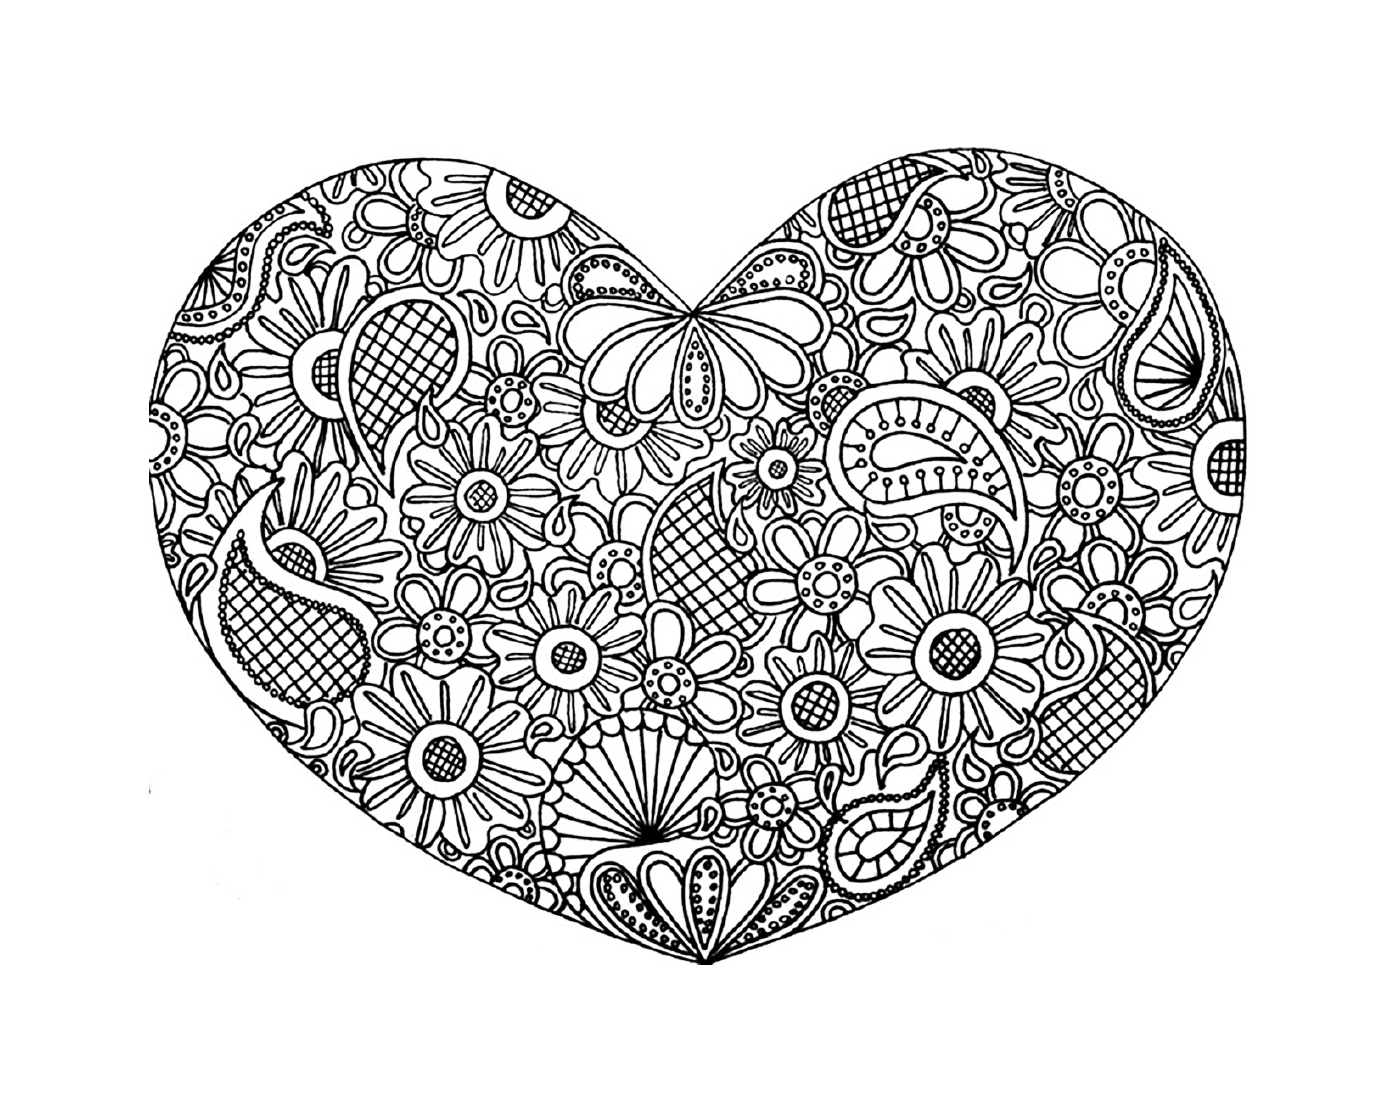  Ein komplexes Herz mit Doodles 